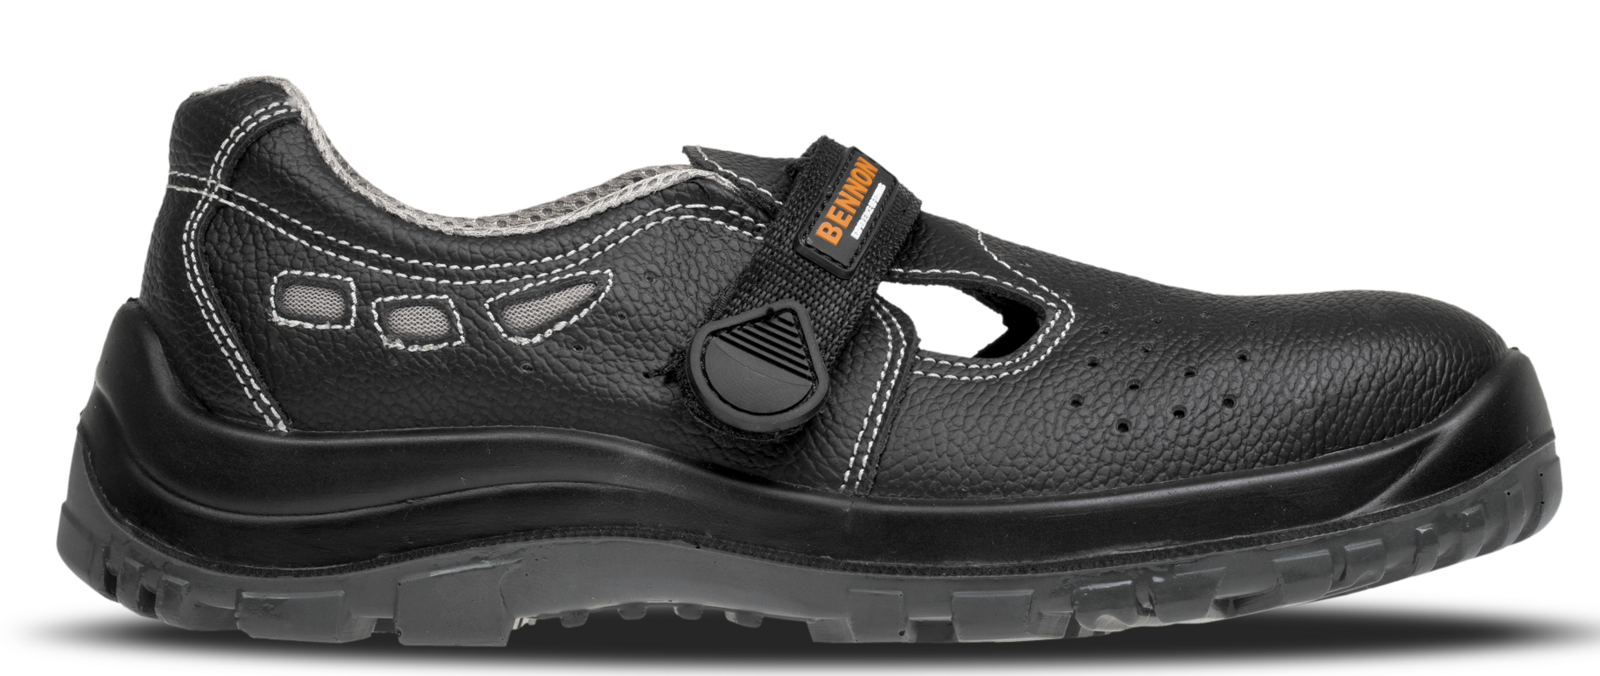 Bezpečnostné sandále Bennon Basic S1 - veľkosť: 46, farba: čierna